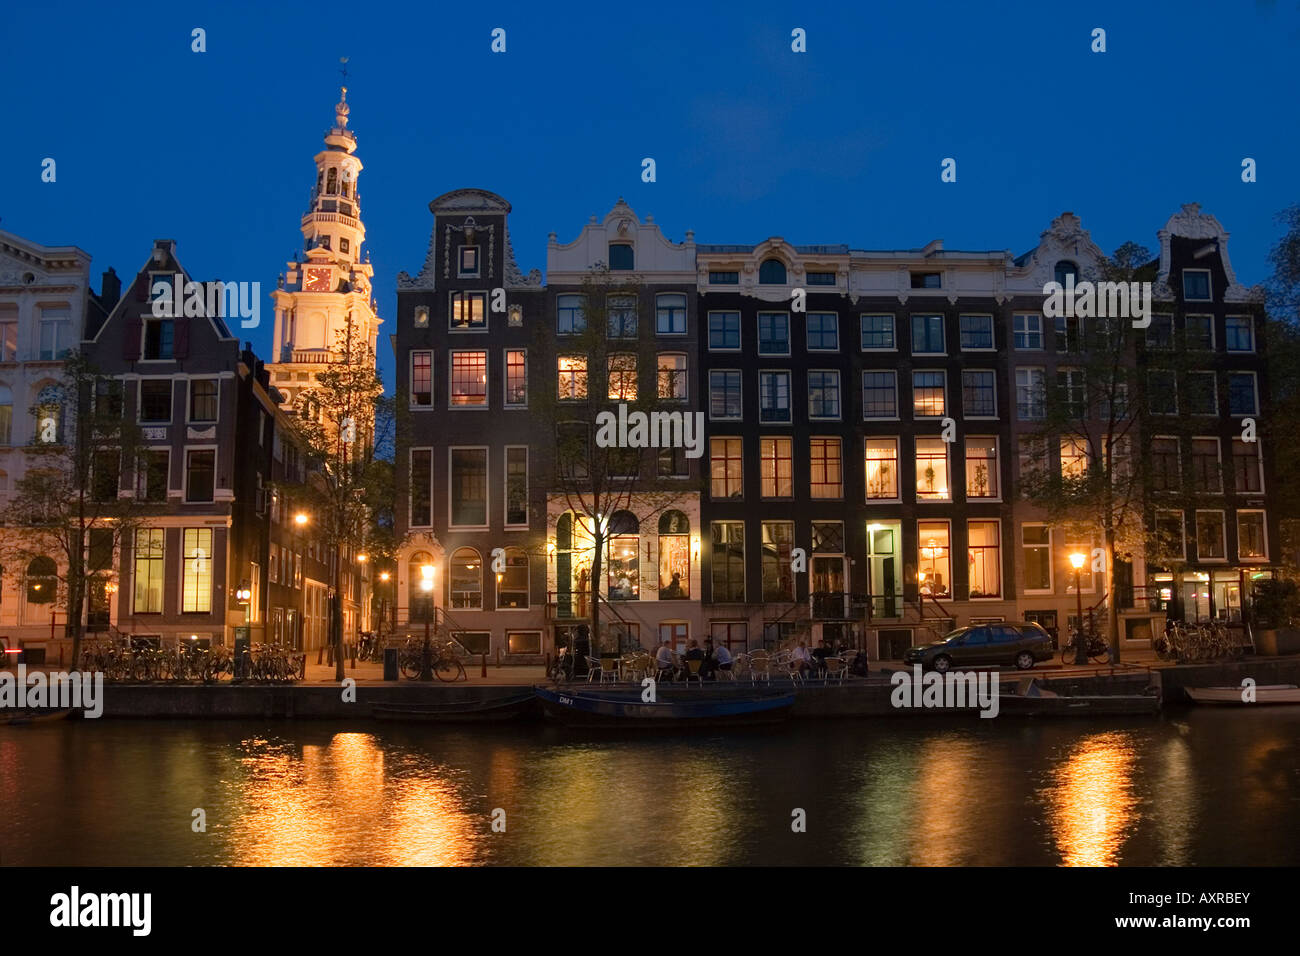 Amsterdam Kloveniersburgwall canal Zuiderkerk at night Stock Photo